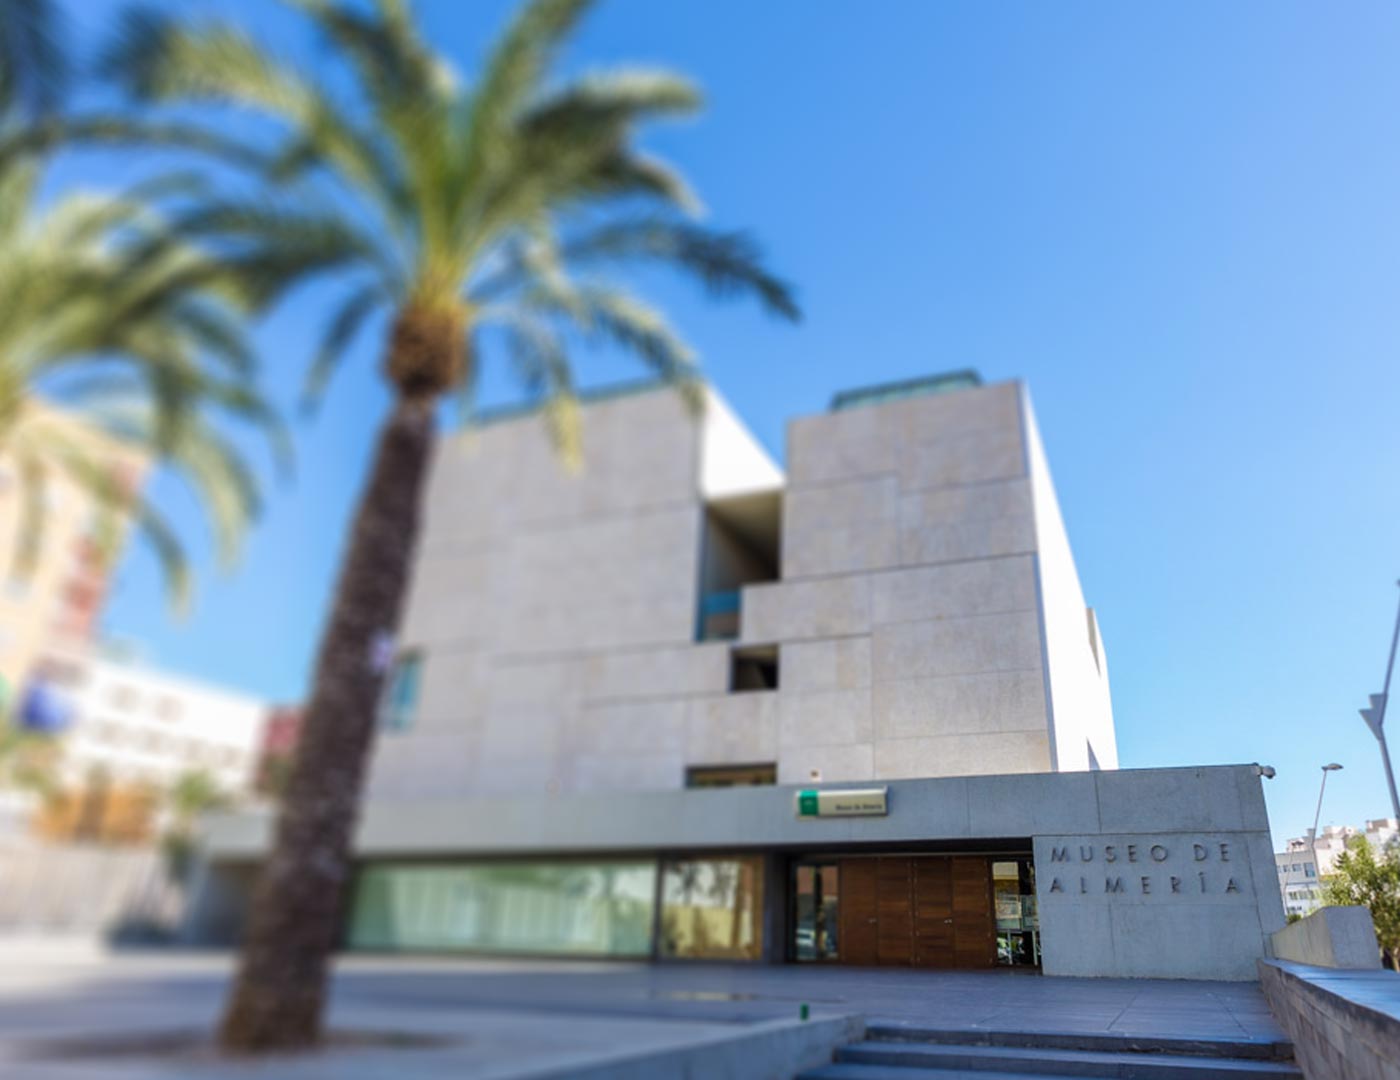 Conferencias sobre Baria en el Museo Arqueológico de Almería